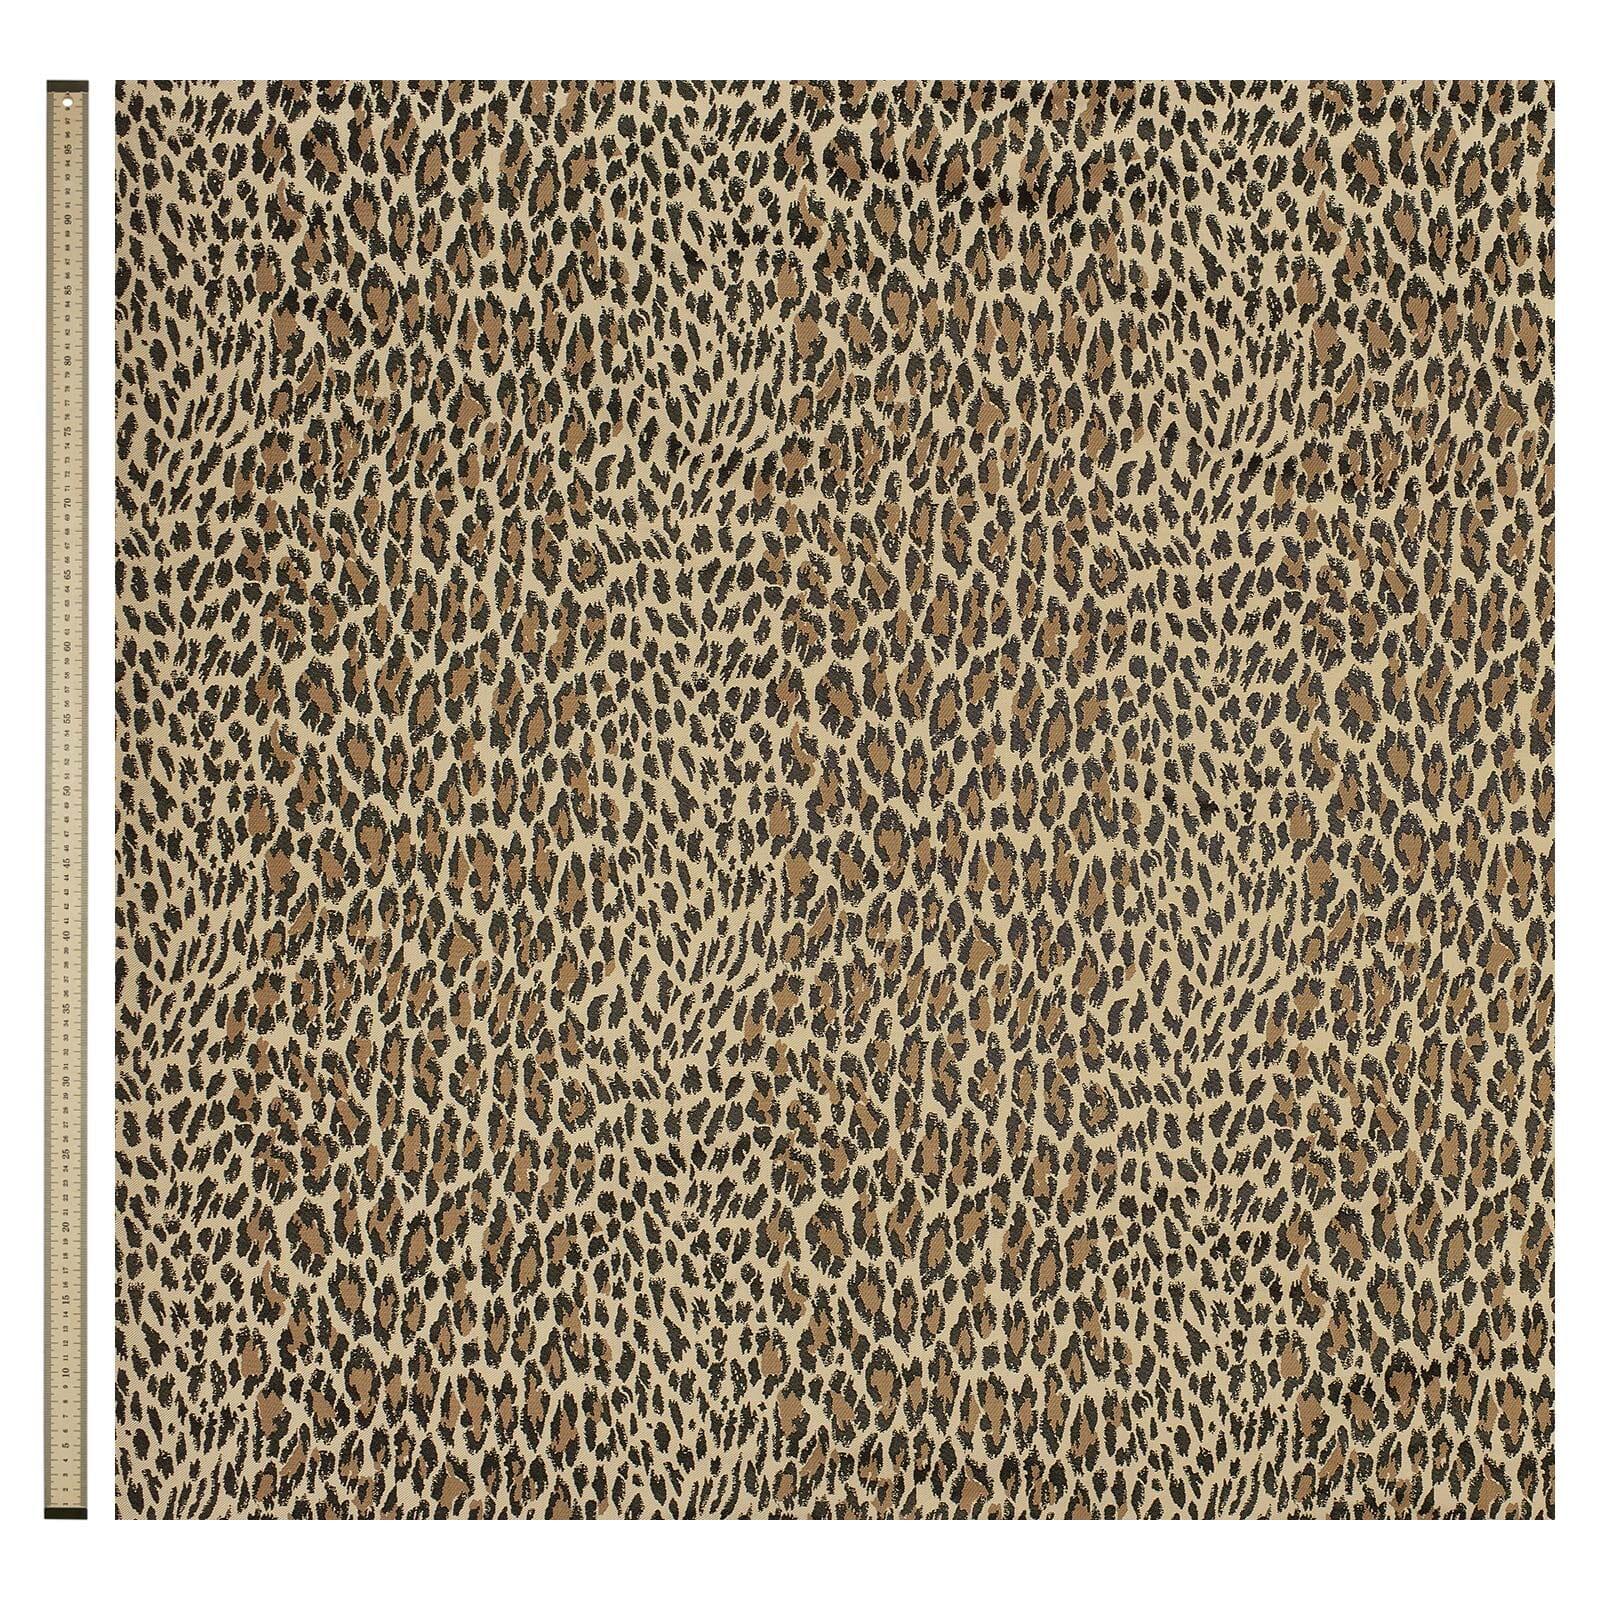 Das neue neutrale WILD CARD ist House of Hackneys Neuinterpretation des klassischen Leopardenflecks, der in kleinem Maßstab überarbeitet wurde, um einen wirklich vielseitigen Druck zu schaffen. Dieser karamellfarbene Baumwolljacquard ist eine